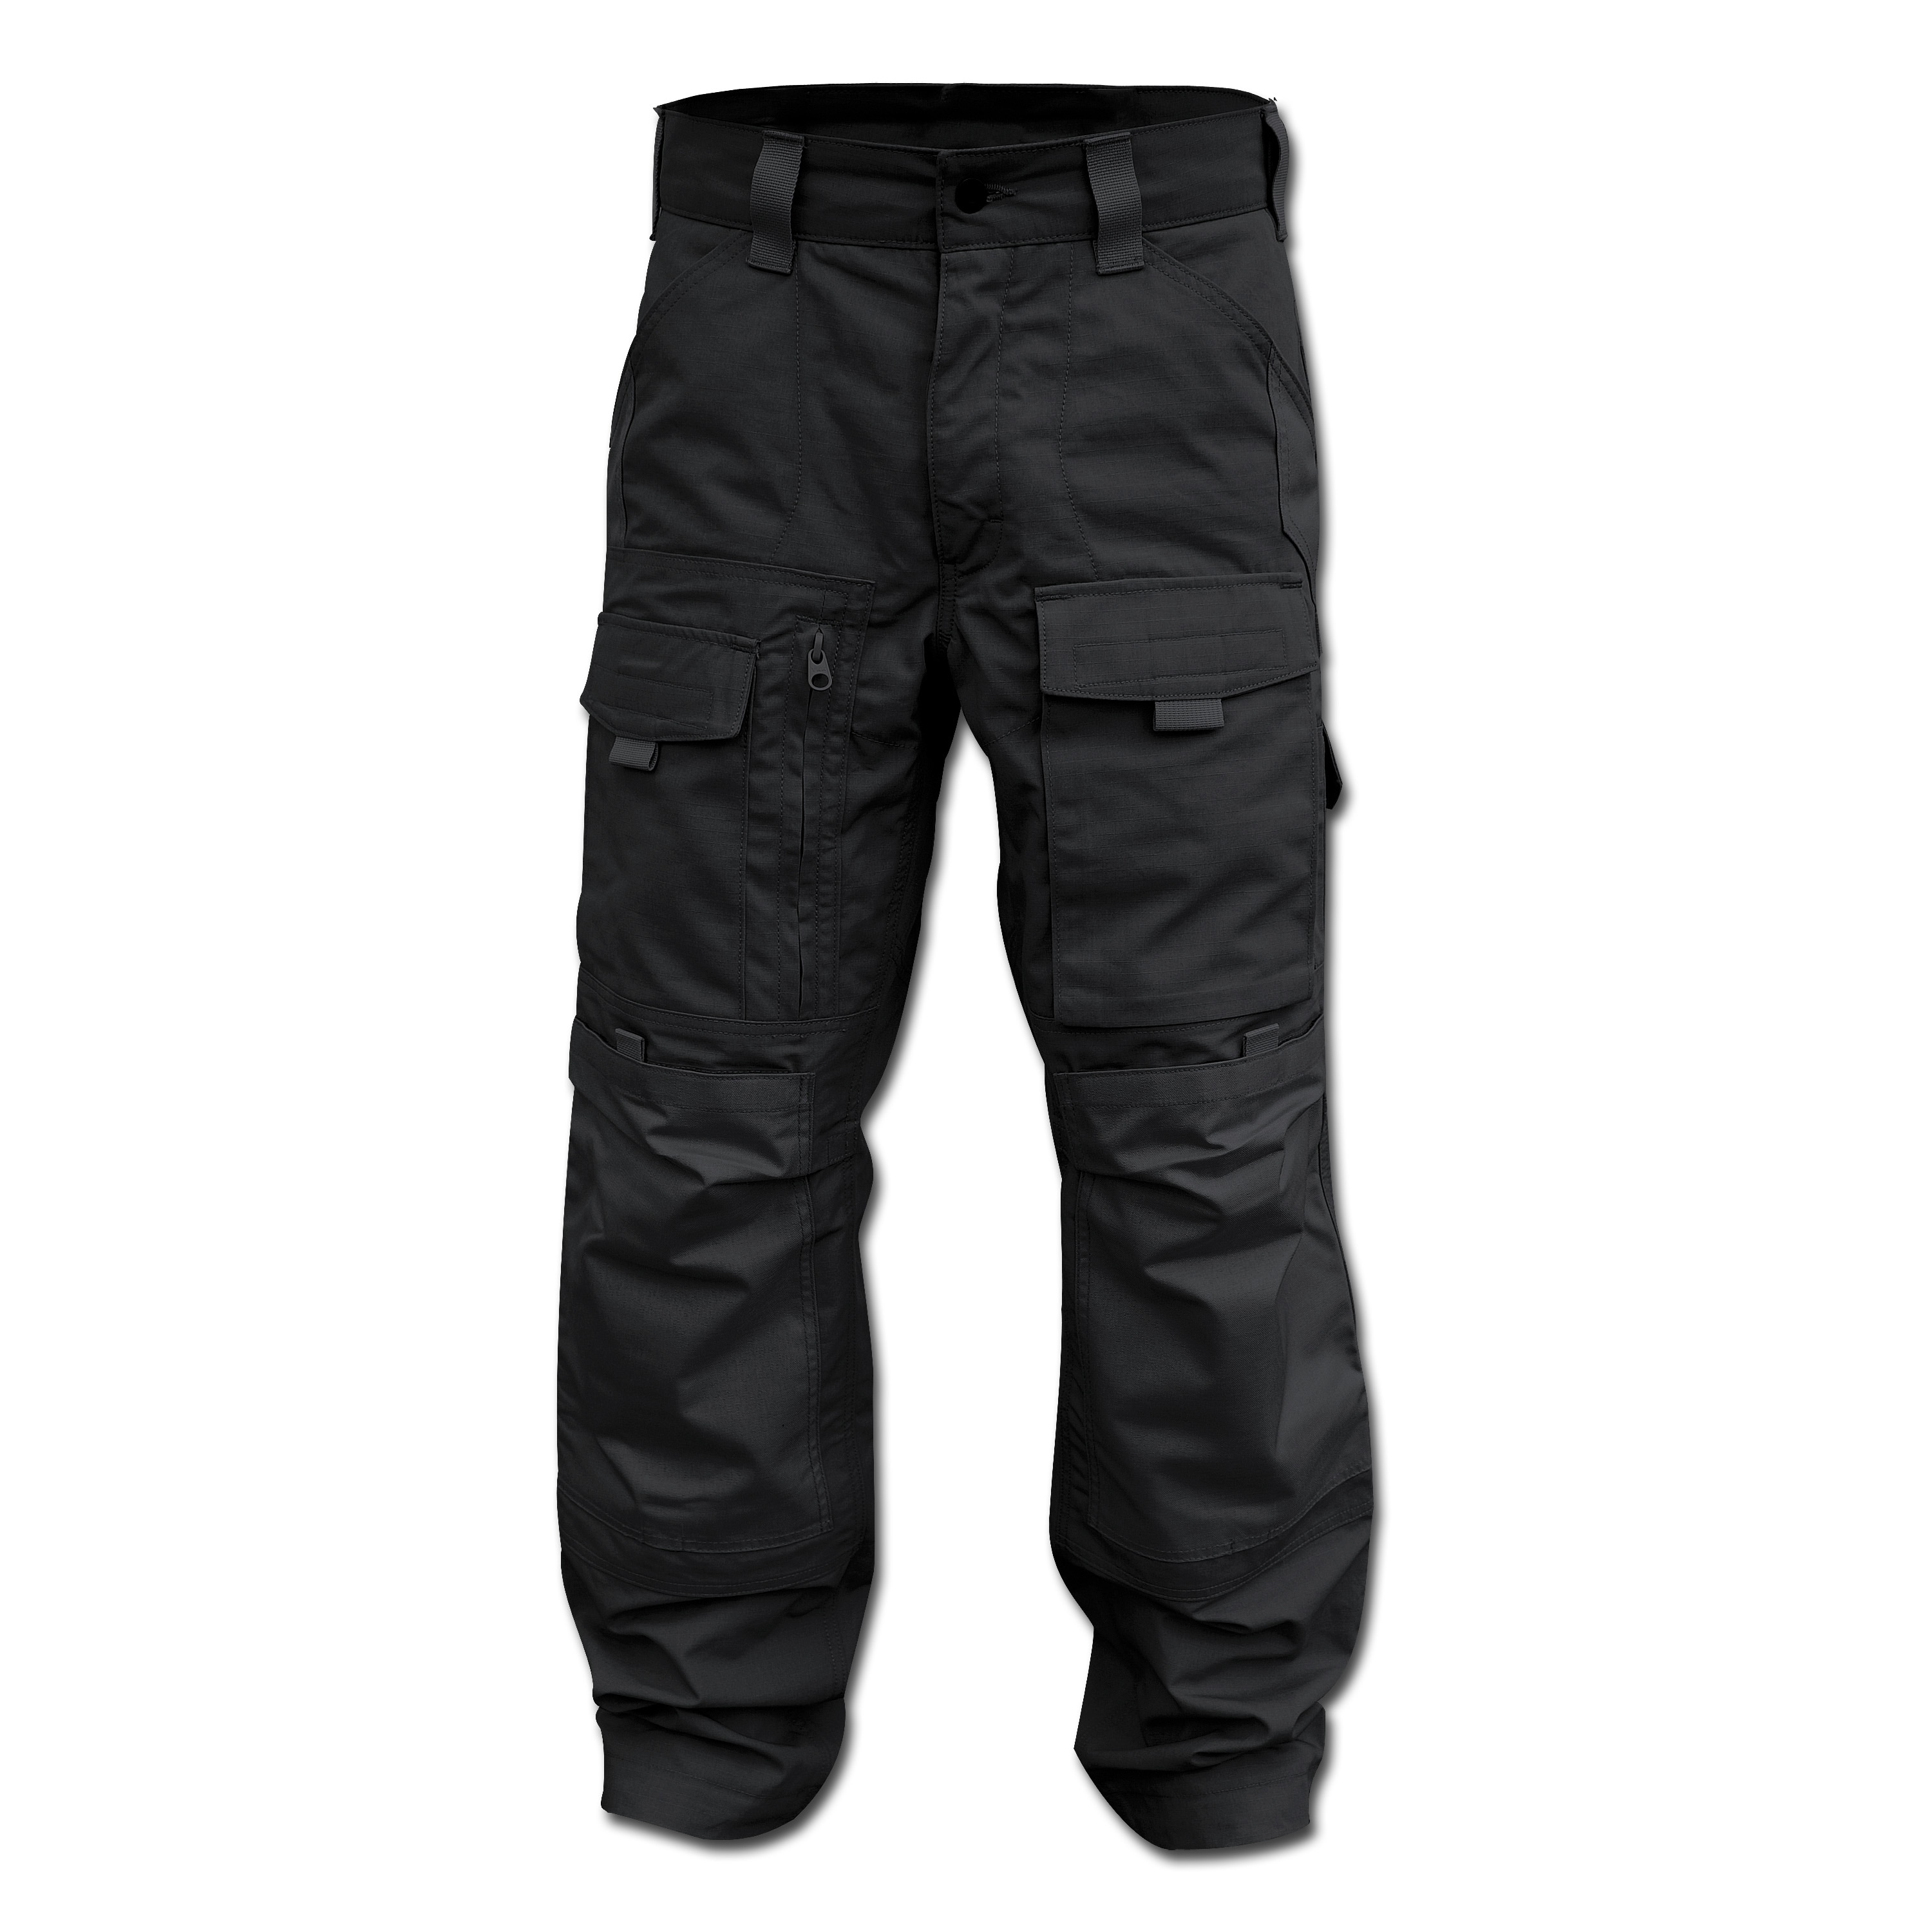 Pants Kitanica Gen. 2 black | Pants Kitanica Gen. 2 black | Pants ...